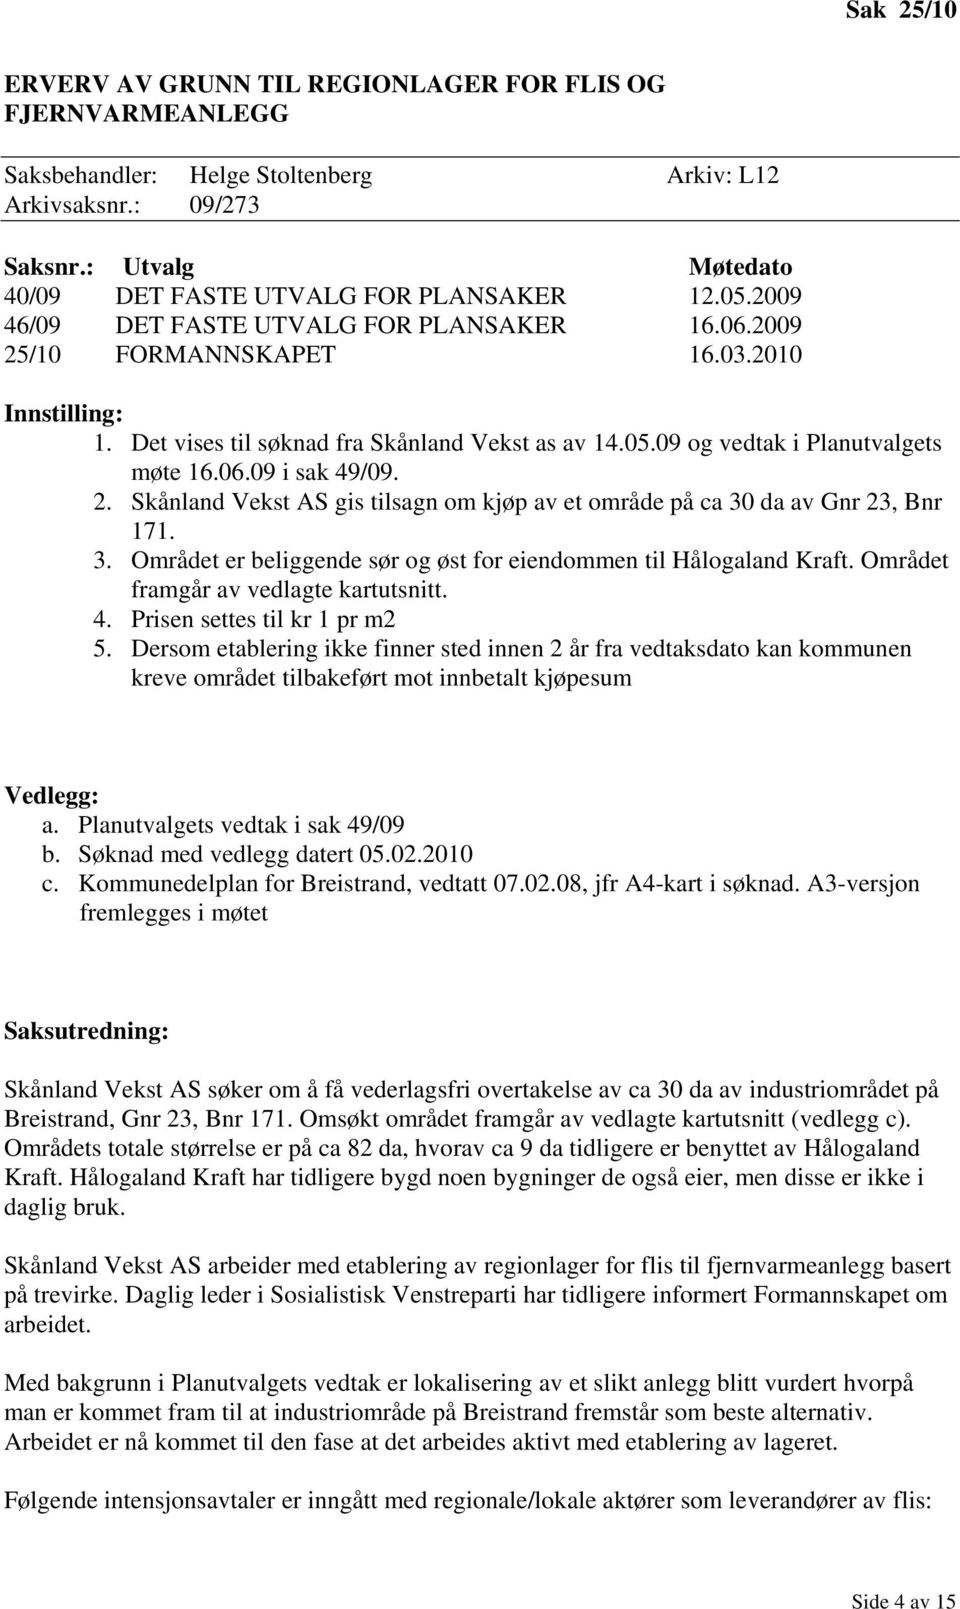 Det vises til søknad fra Skånland Vekst as av 14.05.09 og vedtak i Planutvalgets møte 16.06.09 i sak 49/09. 2. Skånland Vekst AS gis tilsagn om kjøp av et område på ca 30